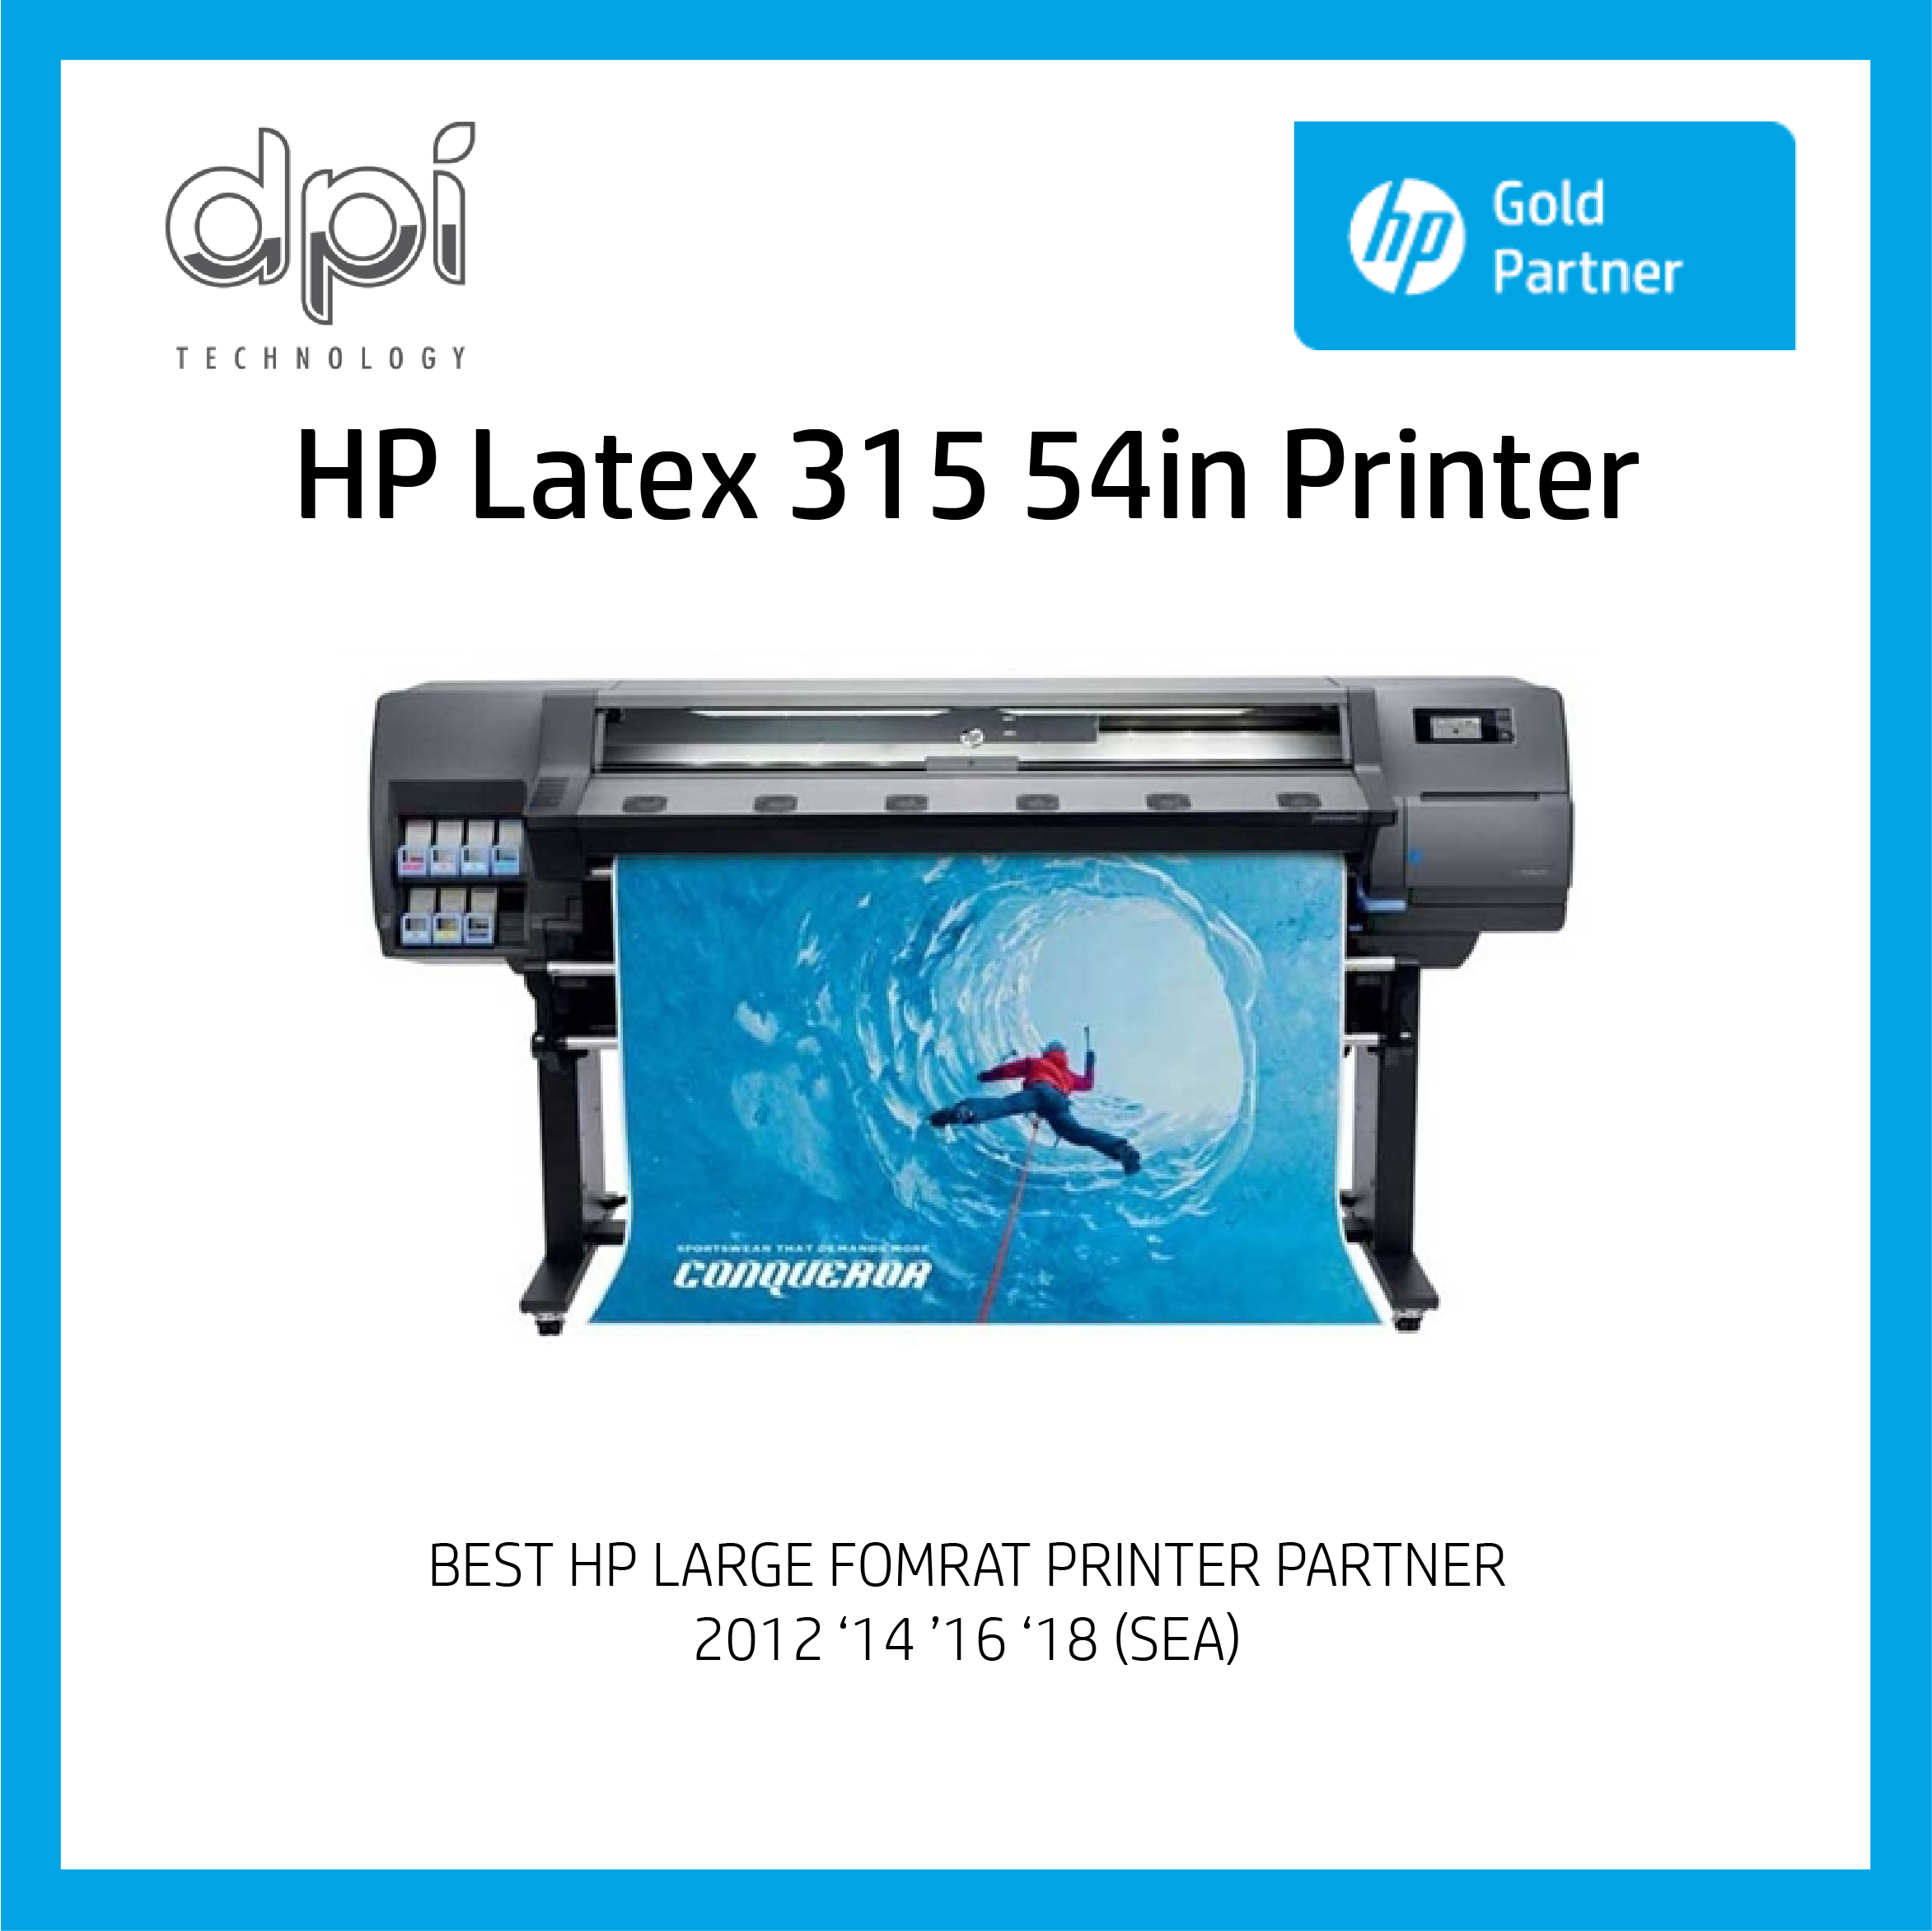 HP Latex 315 54in Printer